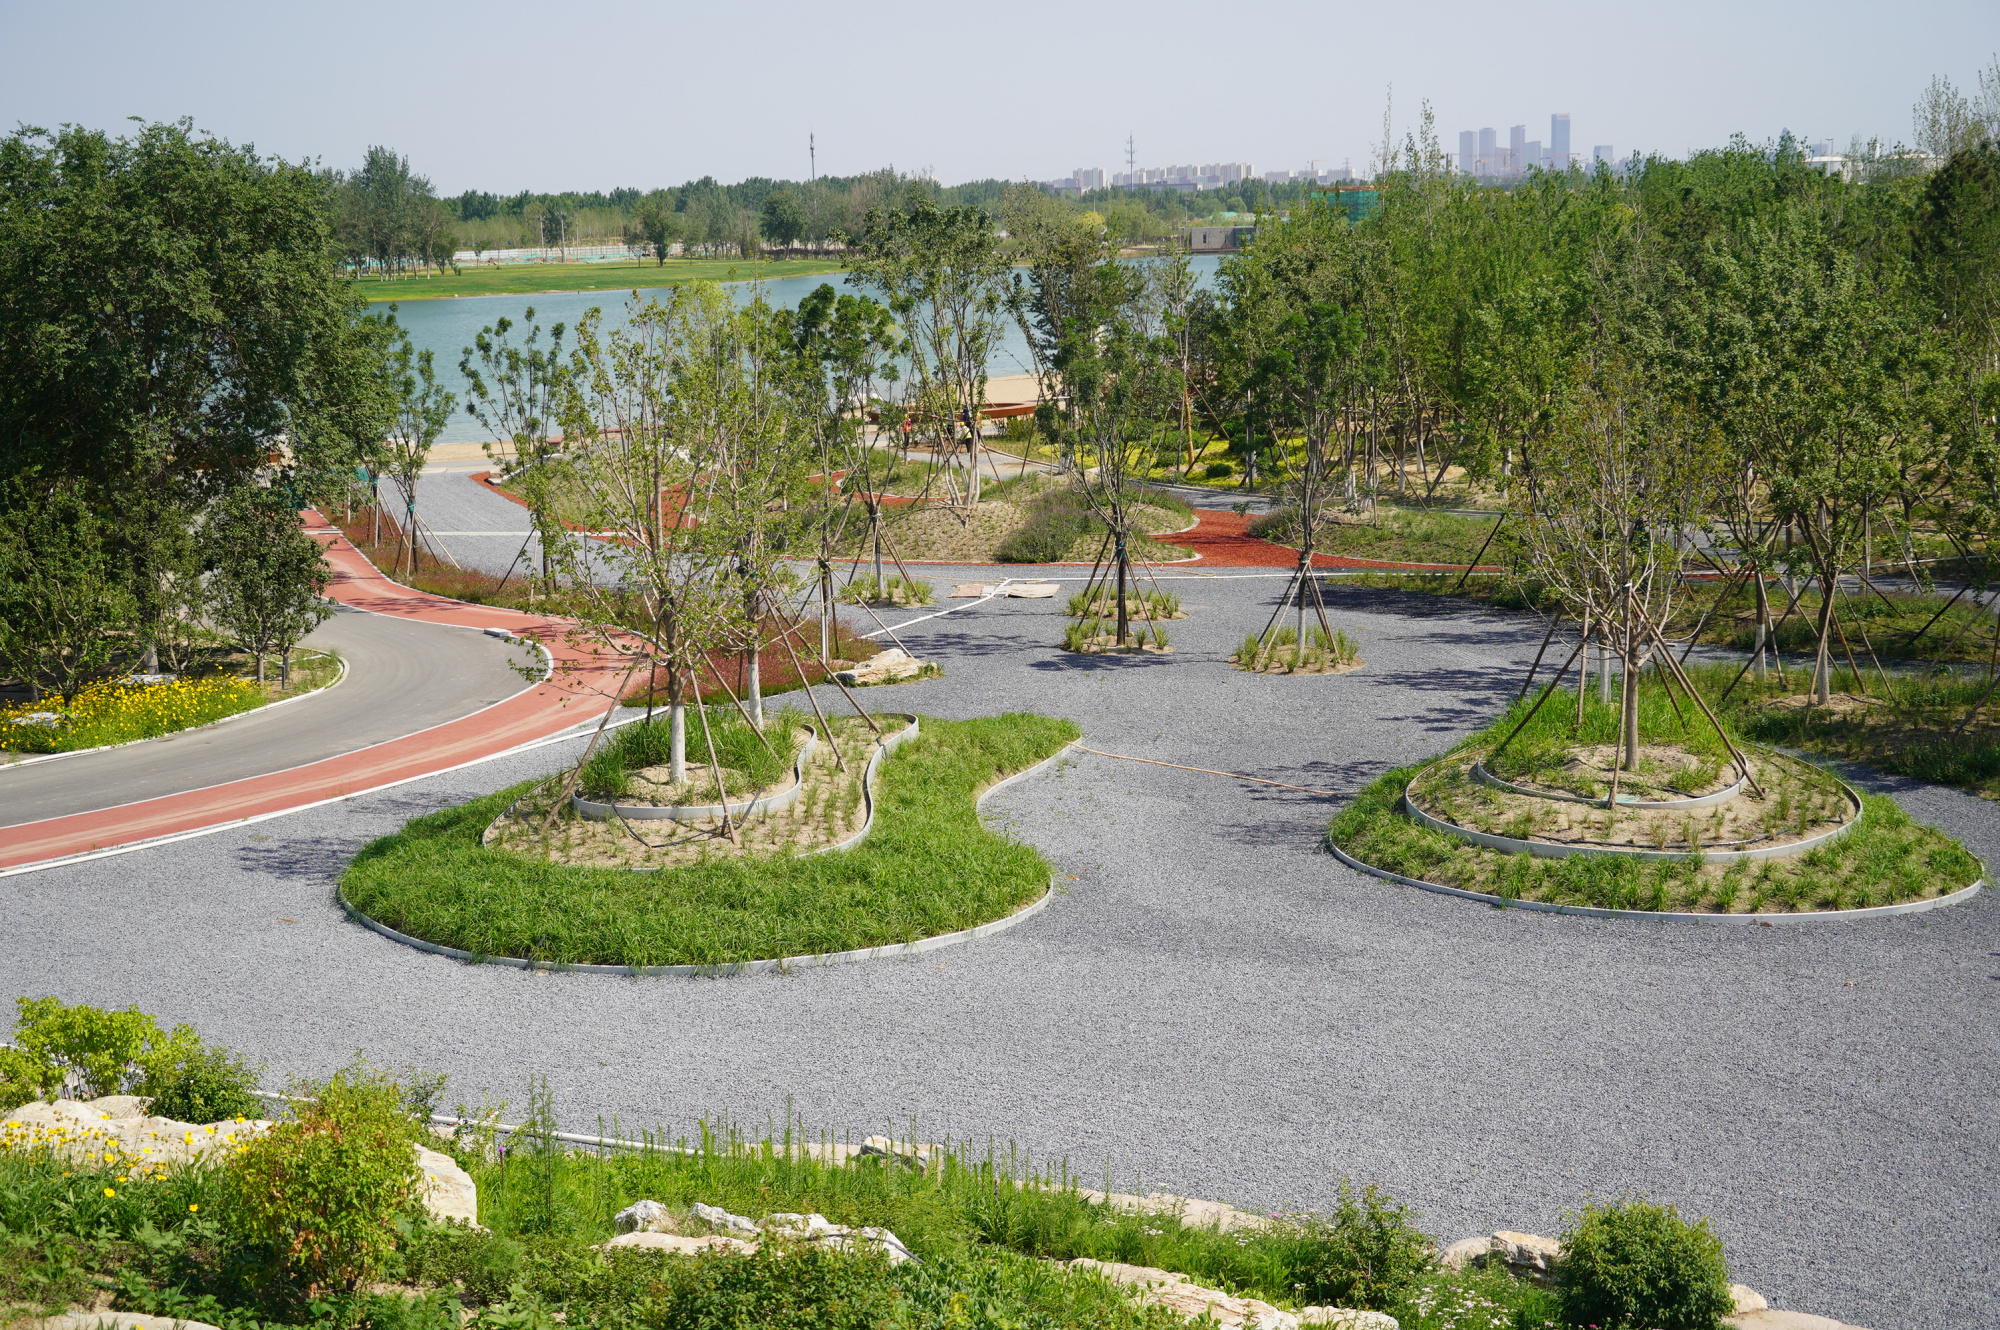 疏解腾退创造增绿空间,朝阳农村:96个精品公园连绿成廊